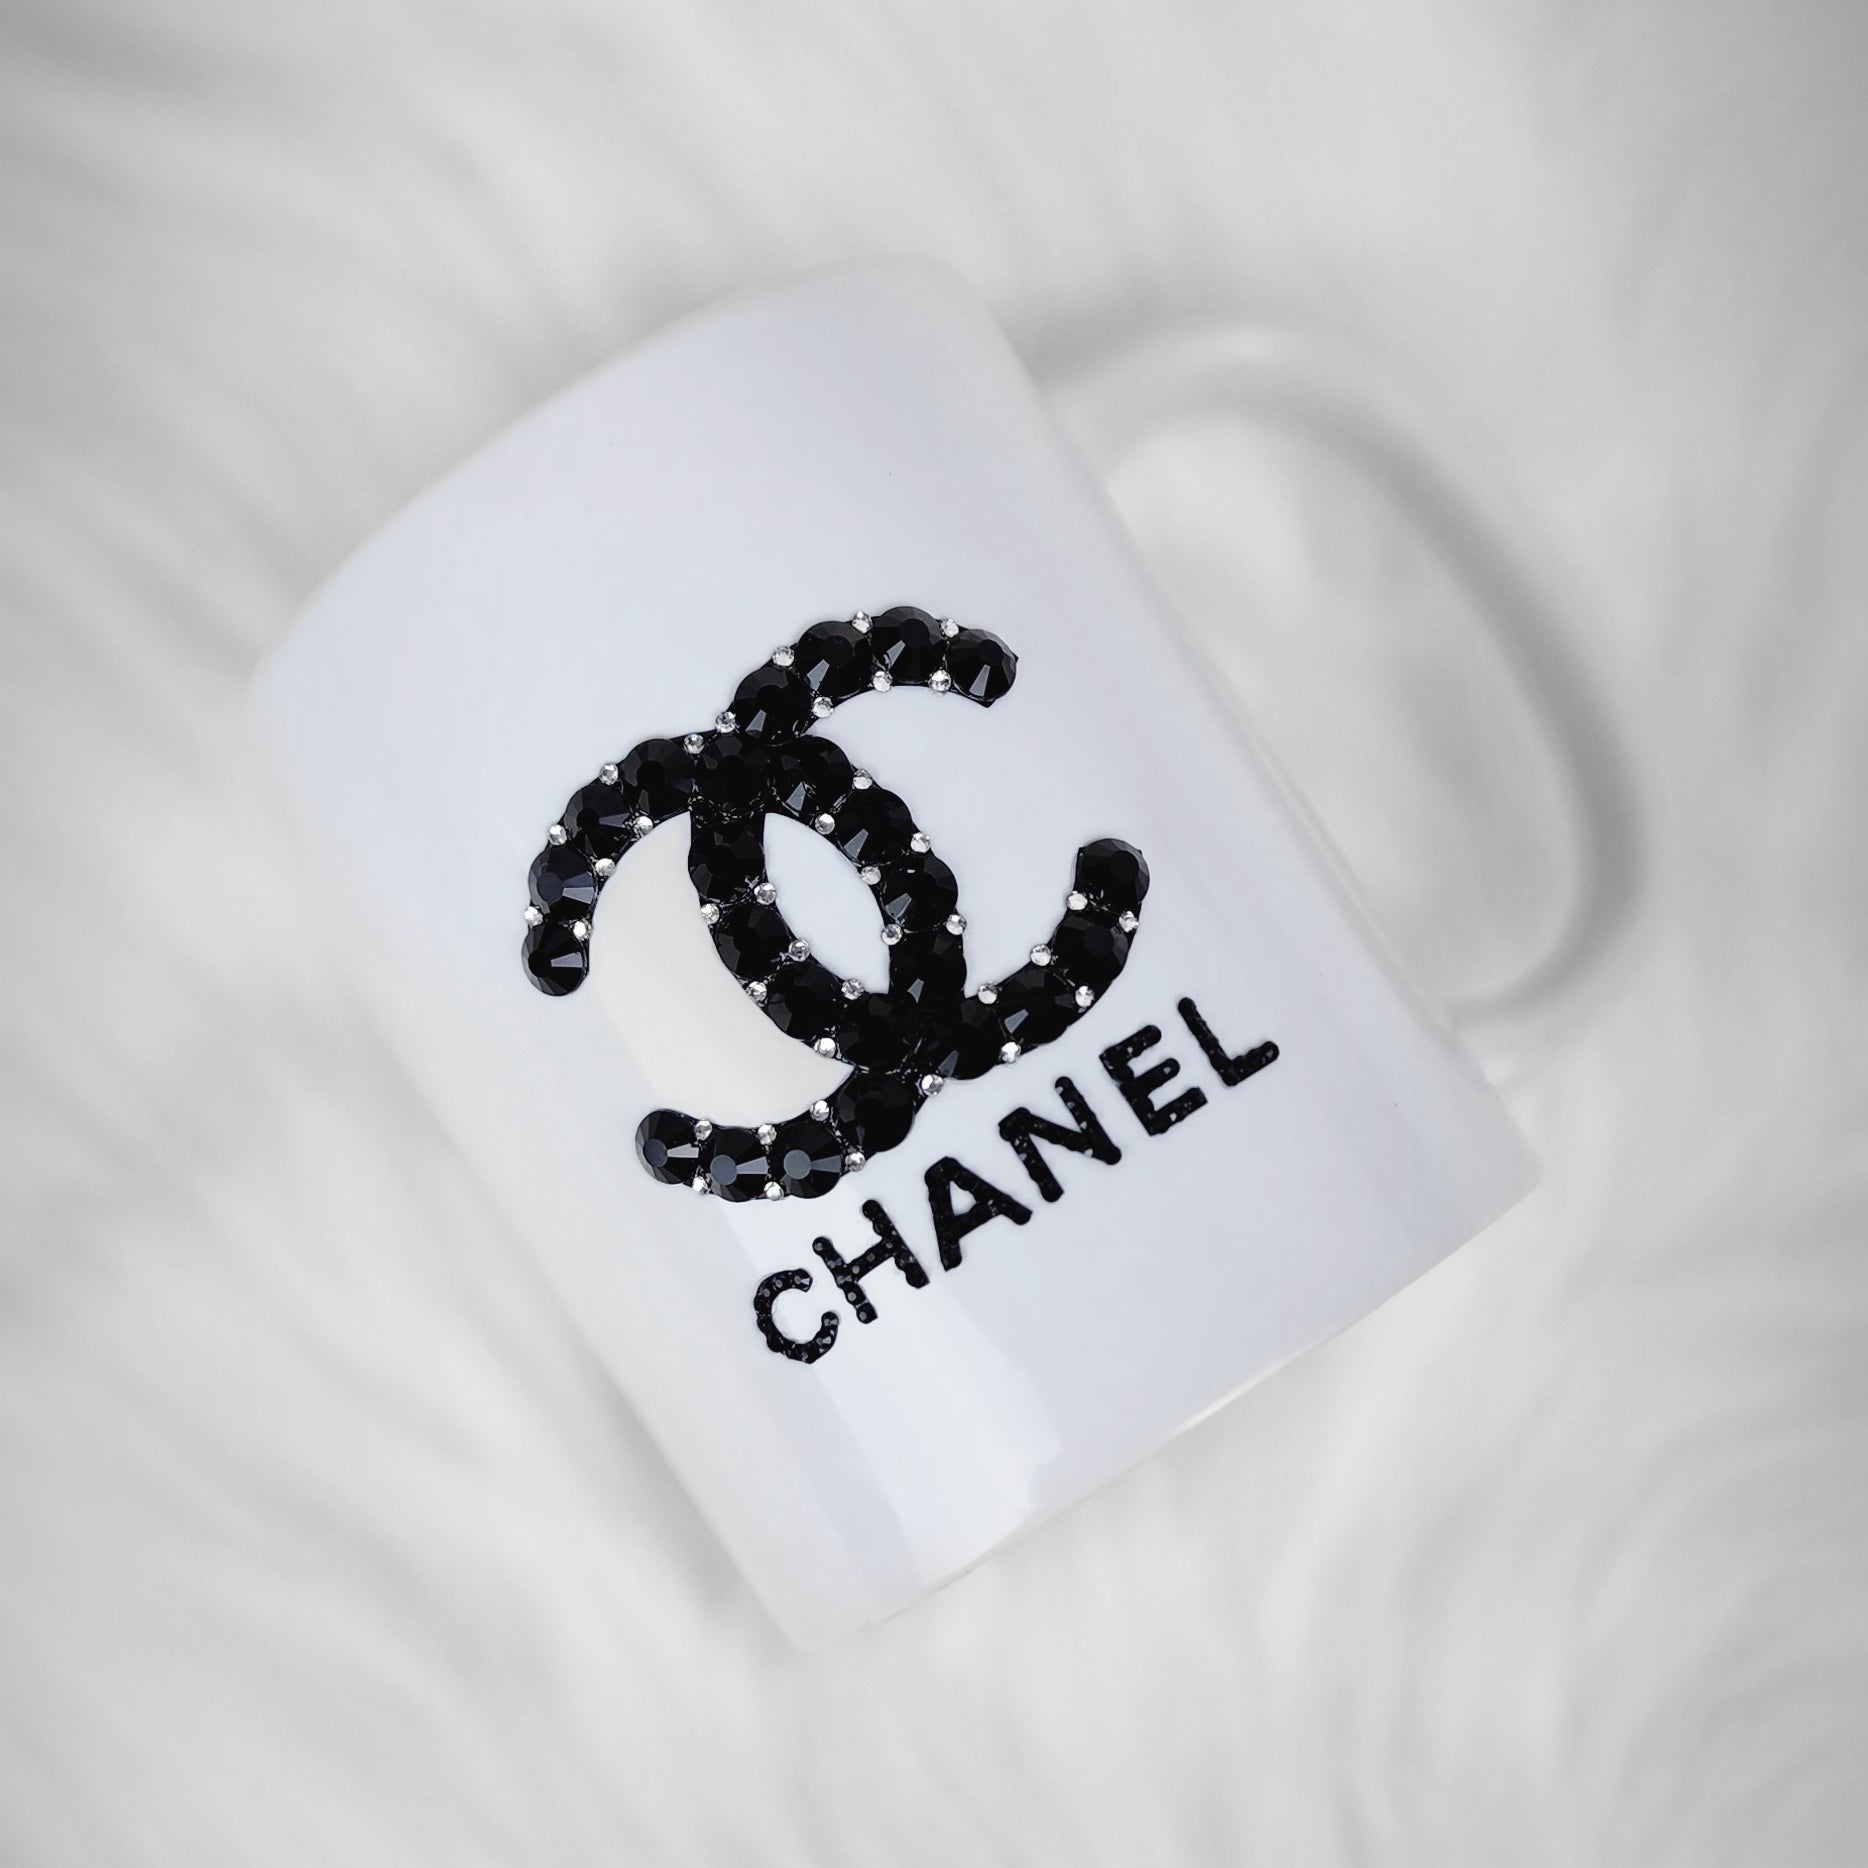 Black Chanel Coffee Mug